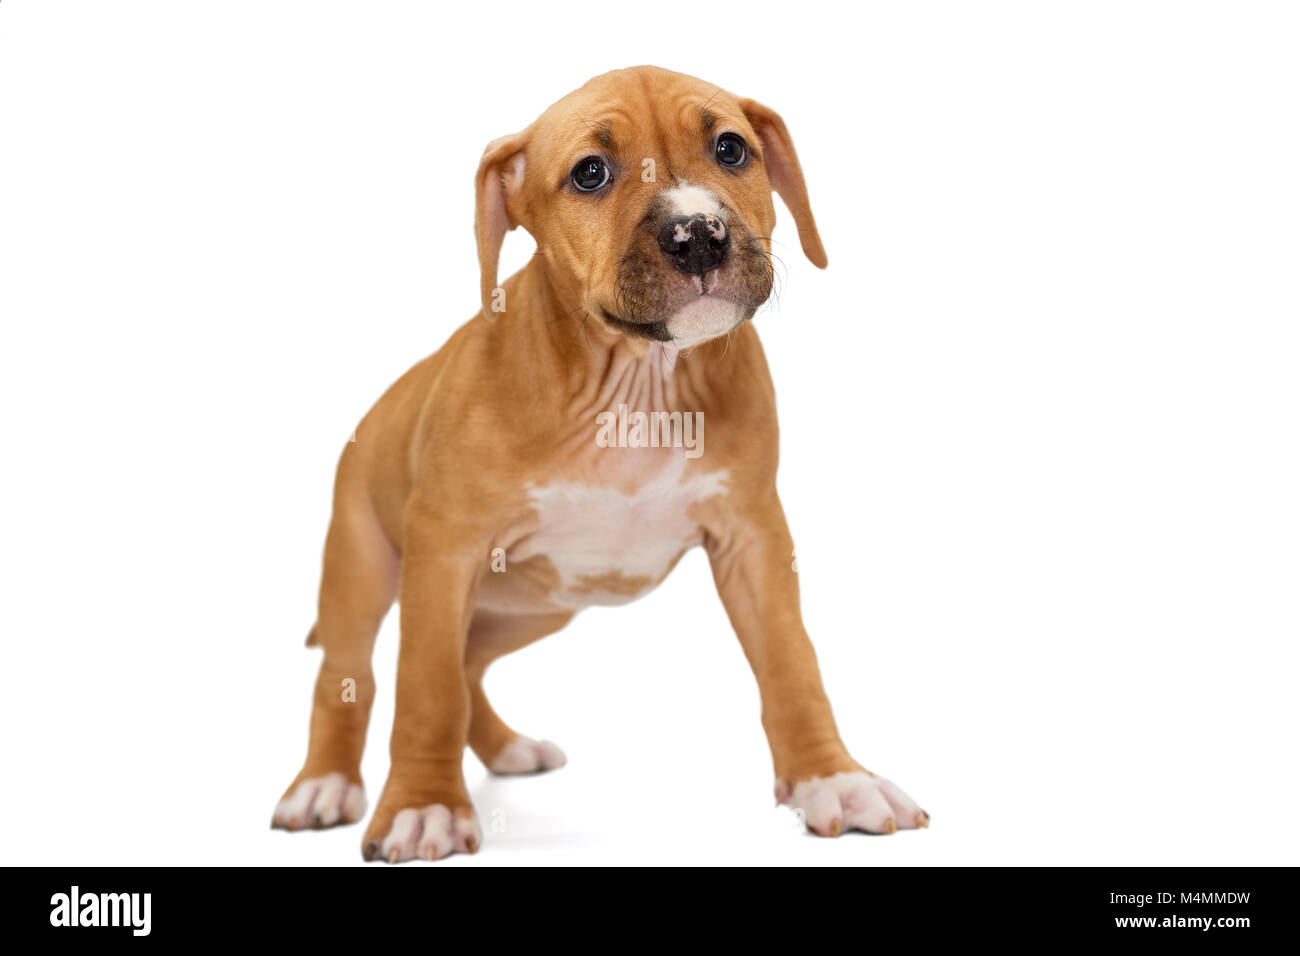 Piccolo cucciolo arancione Staffordshire Terrier, isolato su sfondo bianco Foto Stock